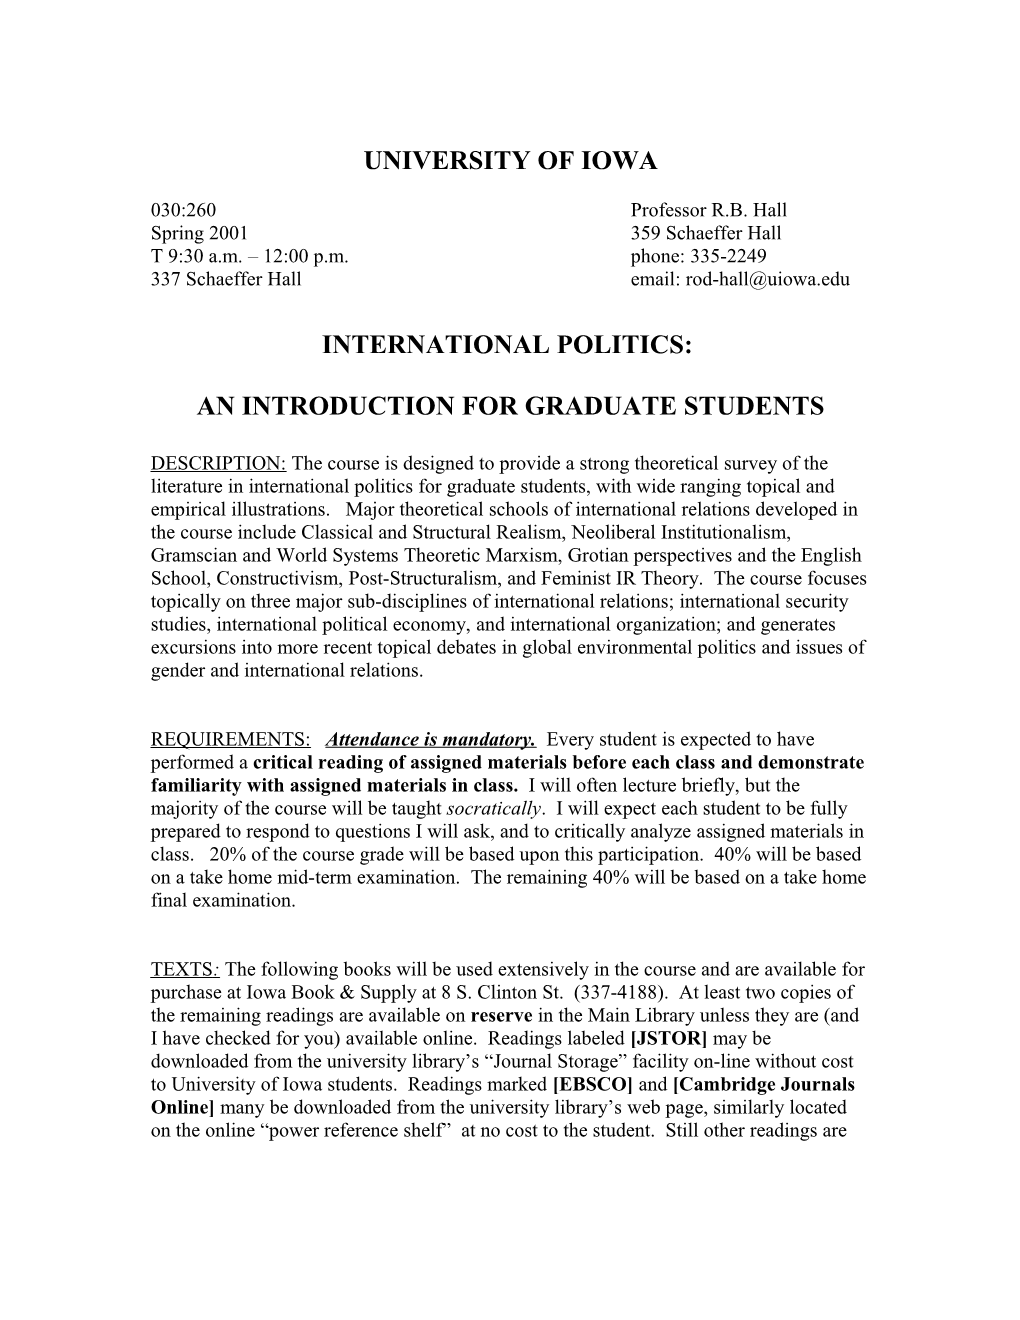 International Politics - 030:260 Spring 2001